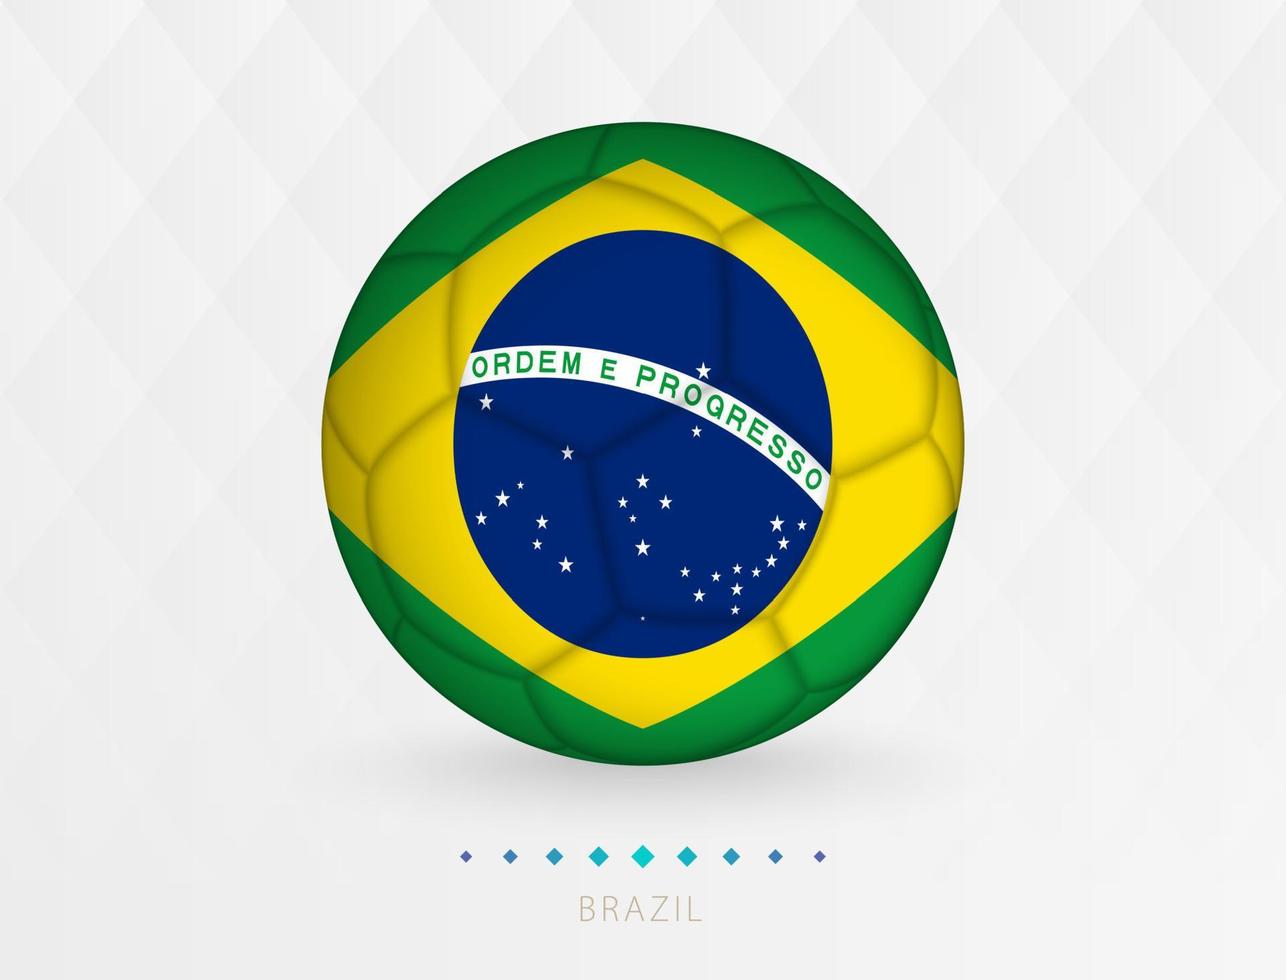 ballon de football avec motif drapeau brésilien, ballon de football avec drapeau de l'équipe nationale brésilienne. vecteur